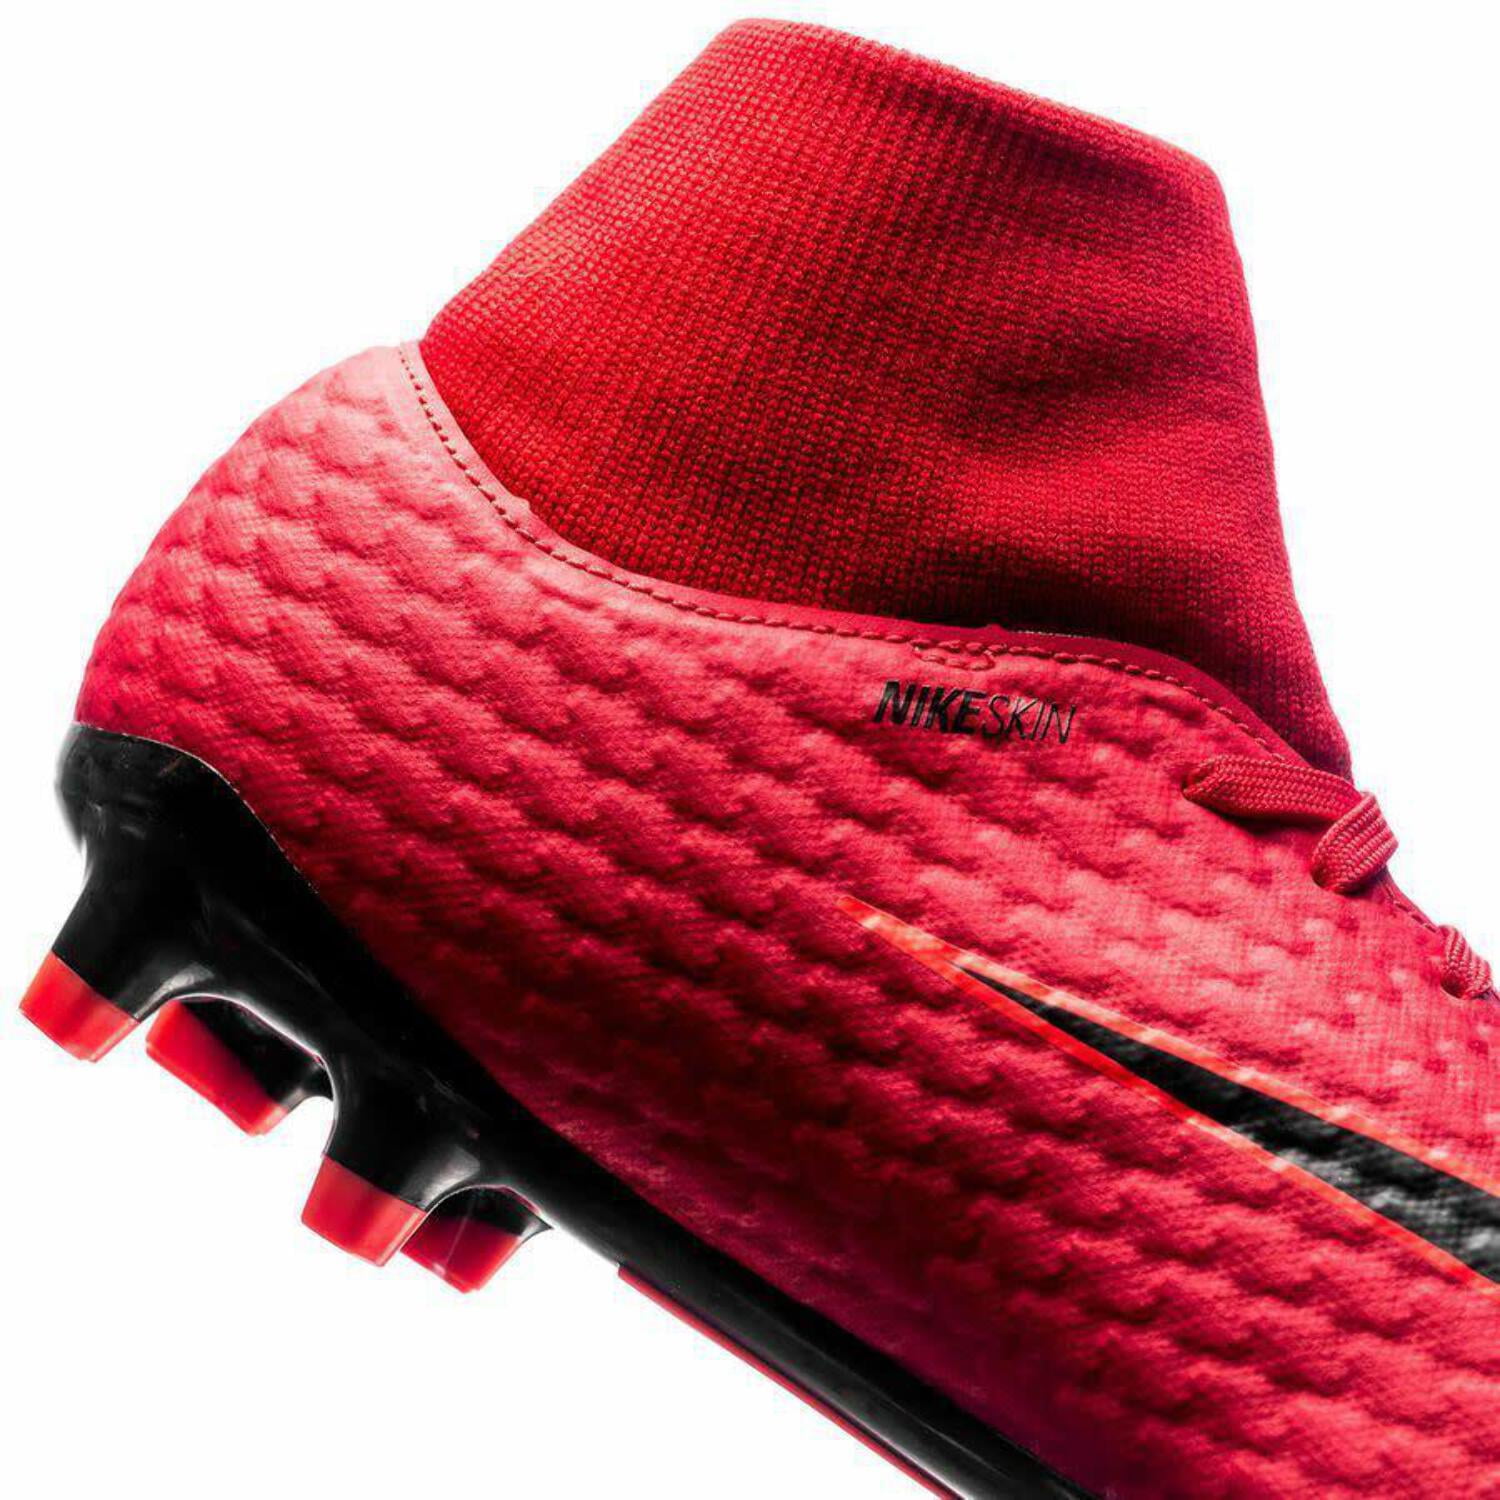 Nike Phelon Nike Skin DF FG - Red/Black 12 - Walmart.com